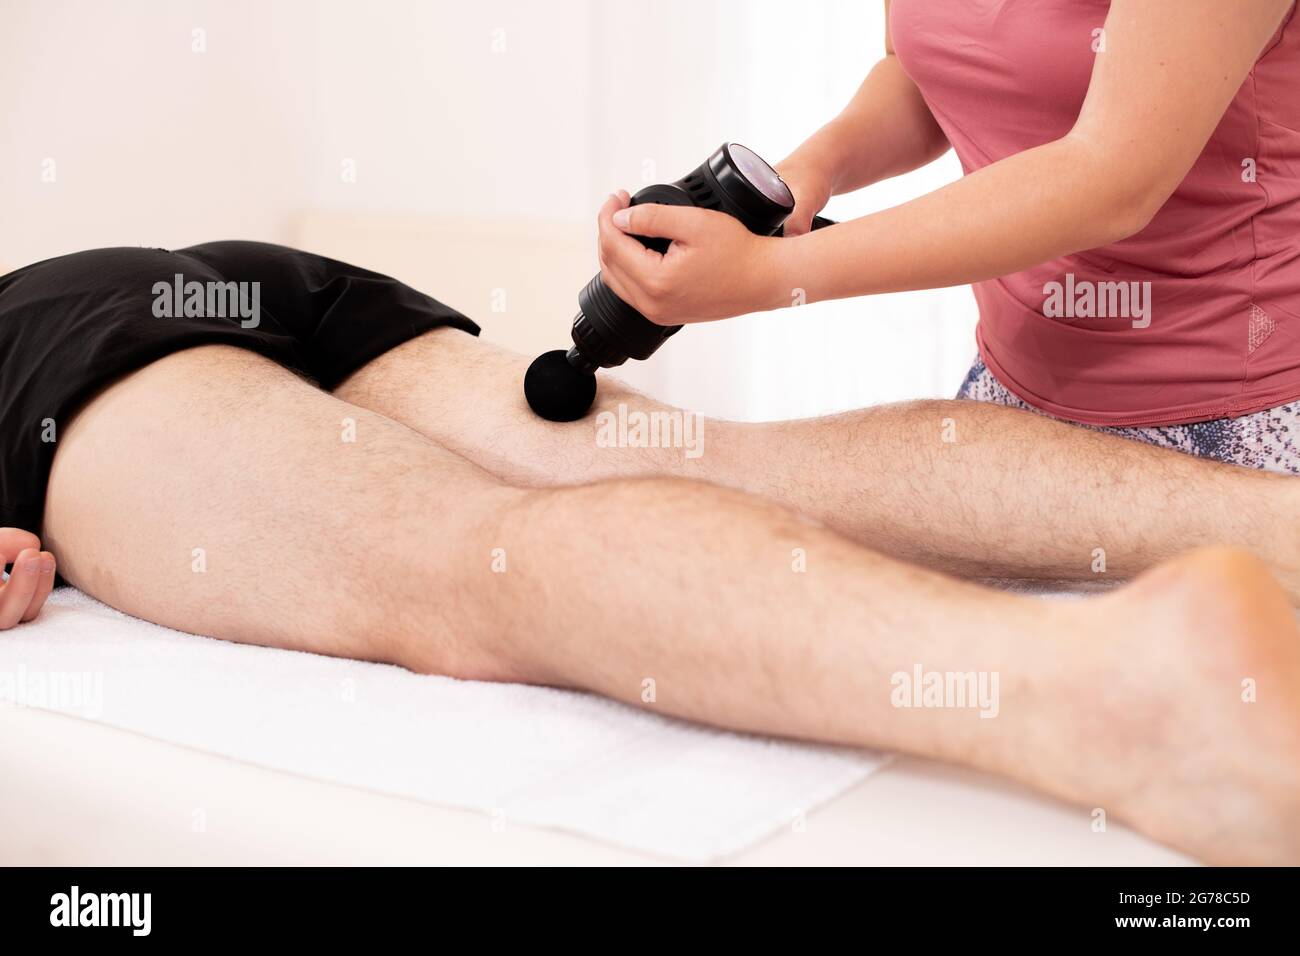 https://c8.alamy.com/compes/2g78c5d/pistola-de-masaje-fisioterapeuta-femenina-joven-que-utiliza-una-pistola-de-masaje-manual-para-aliviar-el-dolor-muscular-de-las-piernas-durante-la-sesion-de-fisioterapia-2g78c5d.jpg